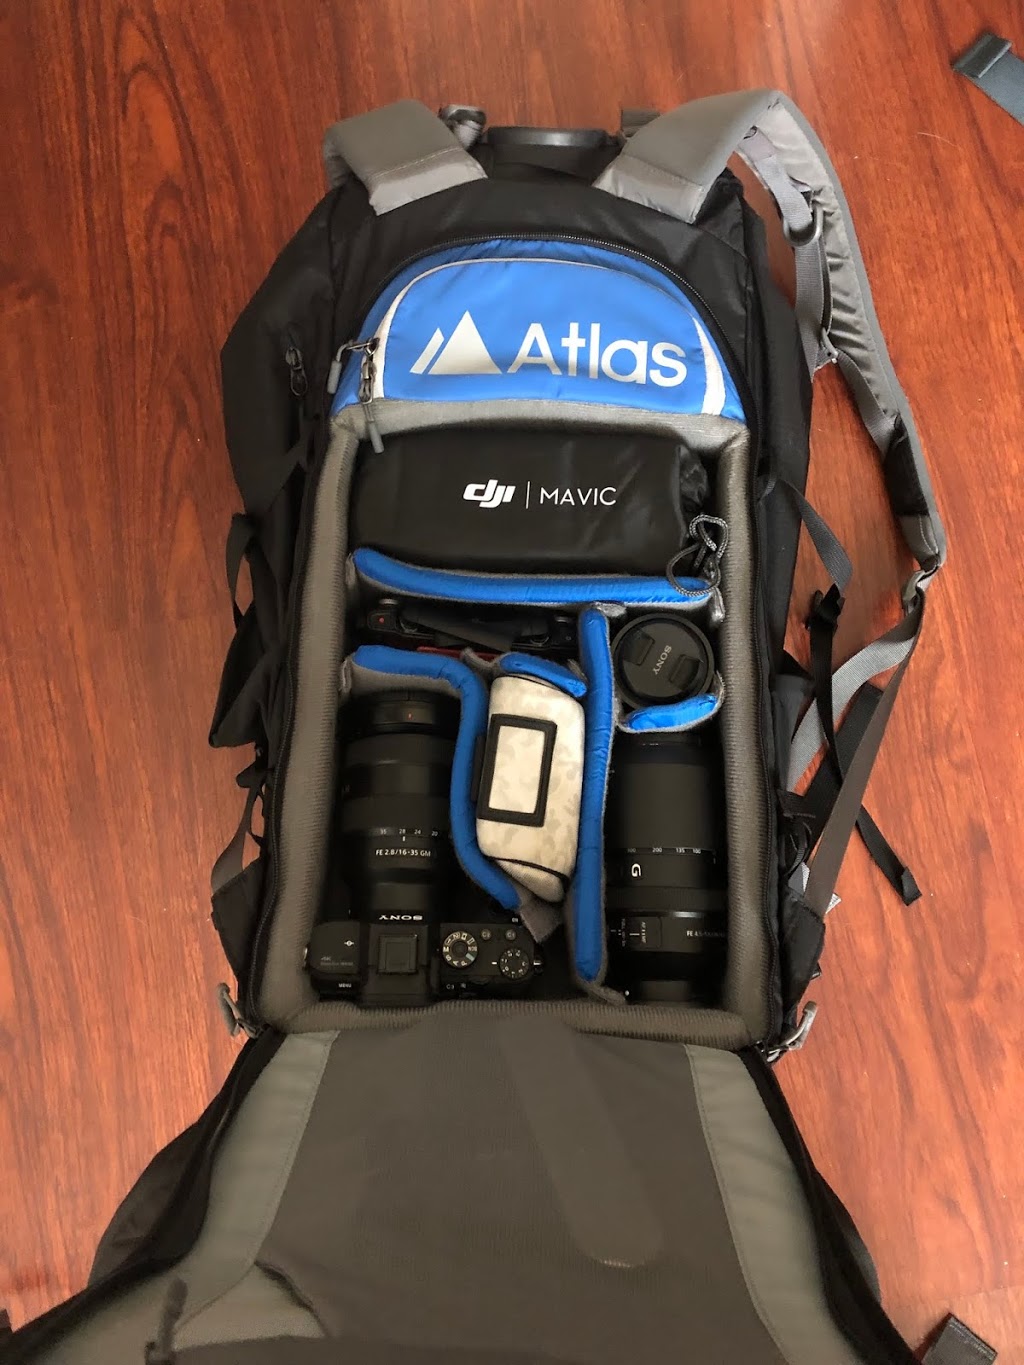 Atlas Packs - Award winning camera bags | 668 N 44th St #107, Phoenix, AZ 85008 | Phone: (602) 833-8448